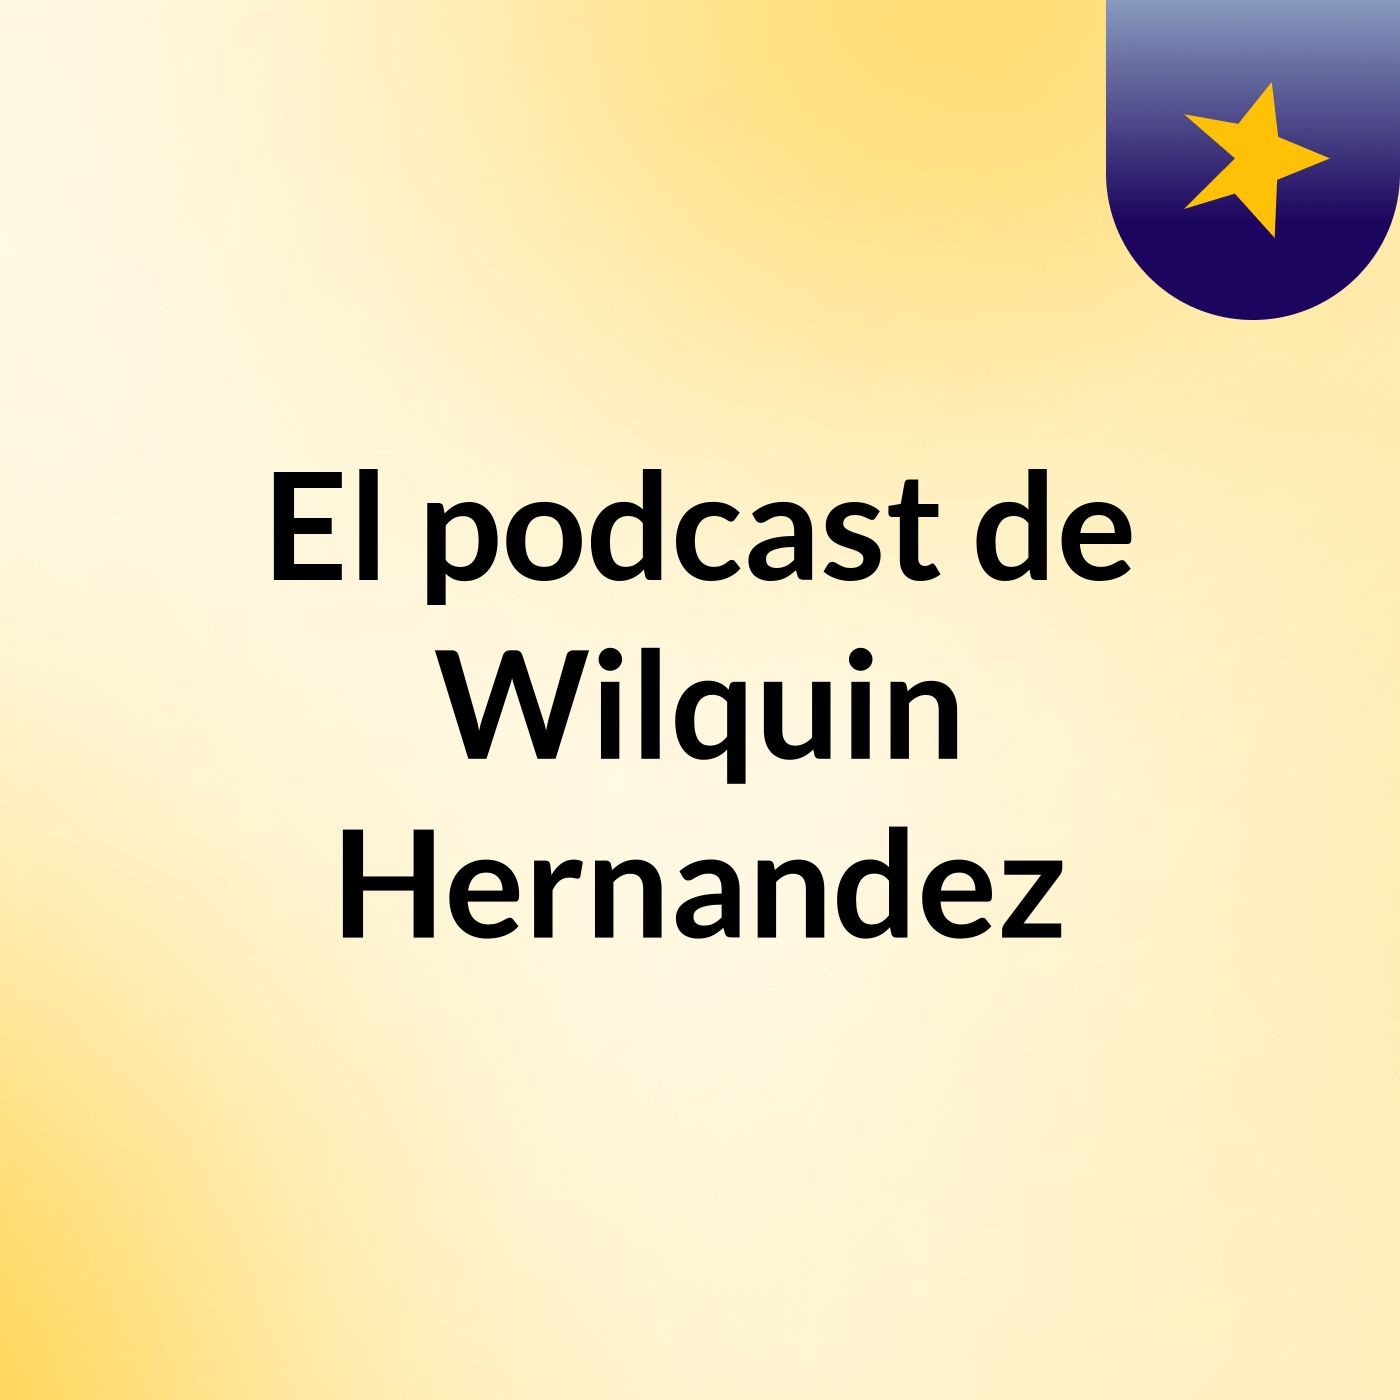 El podcast de Wilquin Hernandez